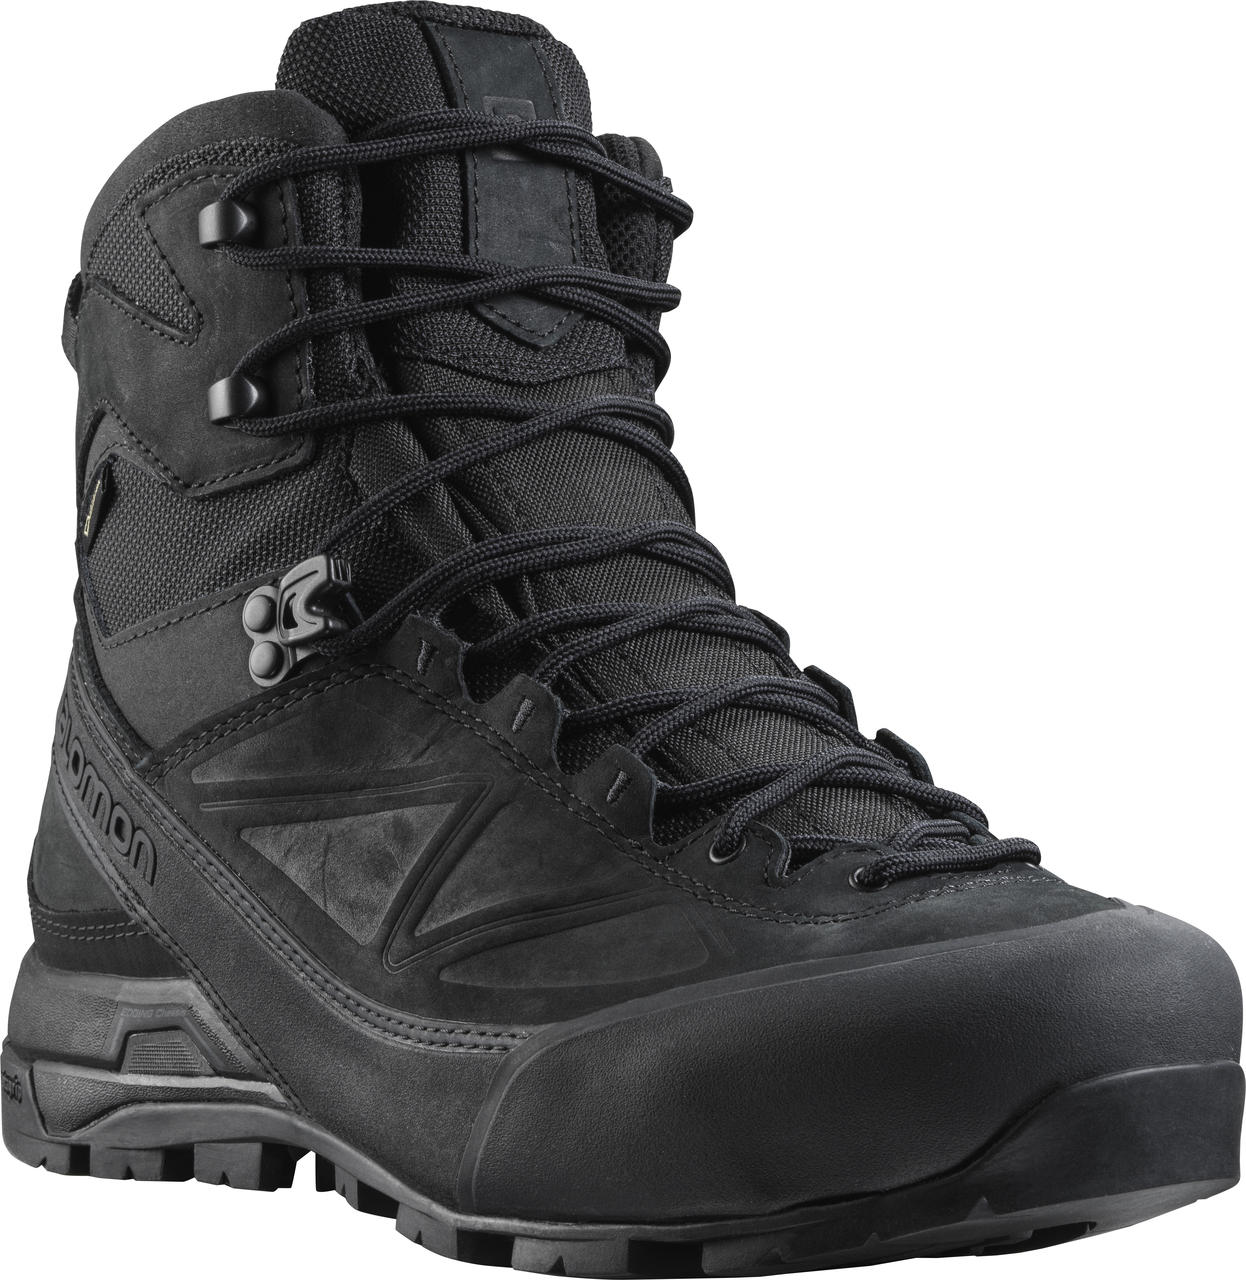 Salomon Black GTX FORCES Men's Tactical Hiking Boot